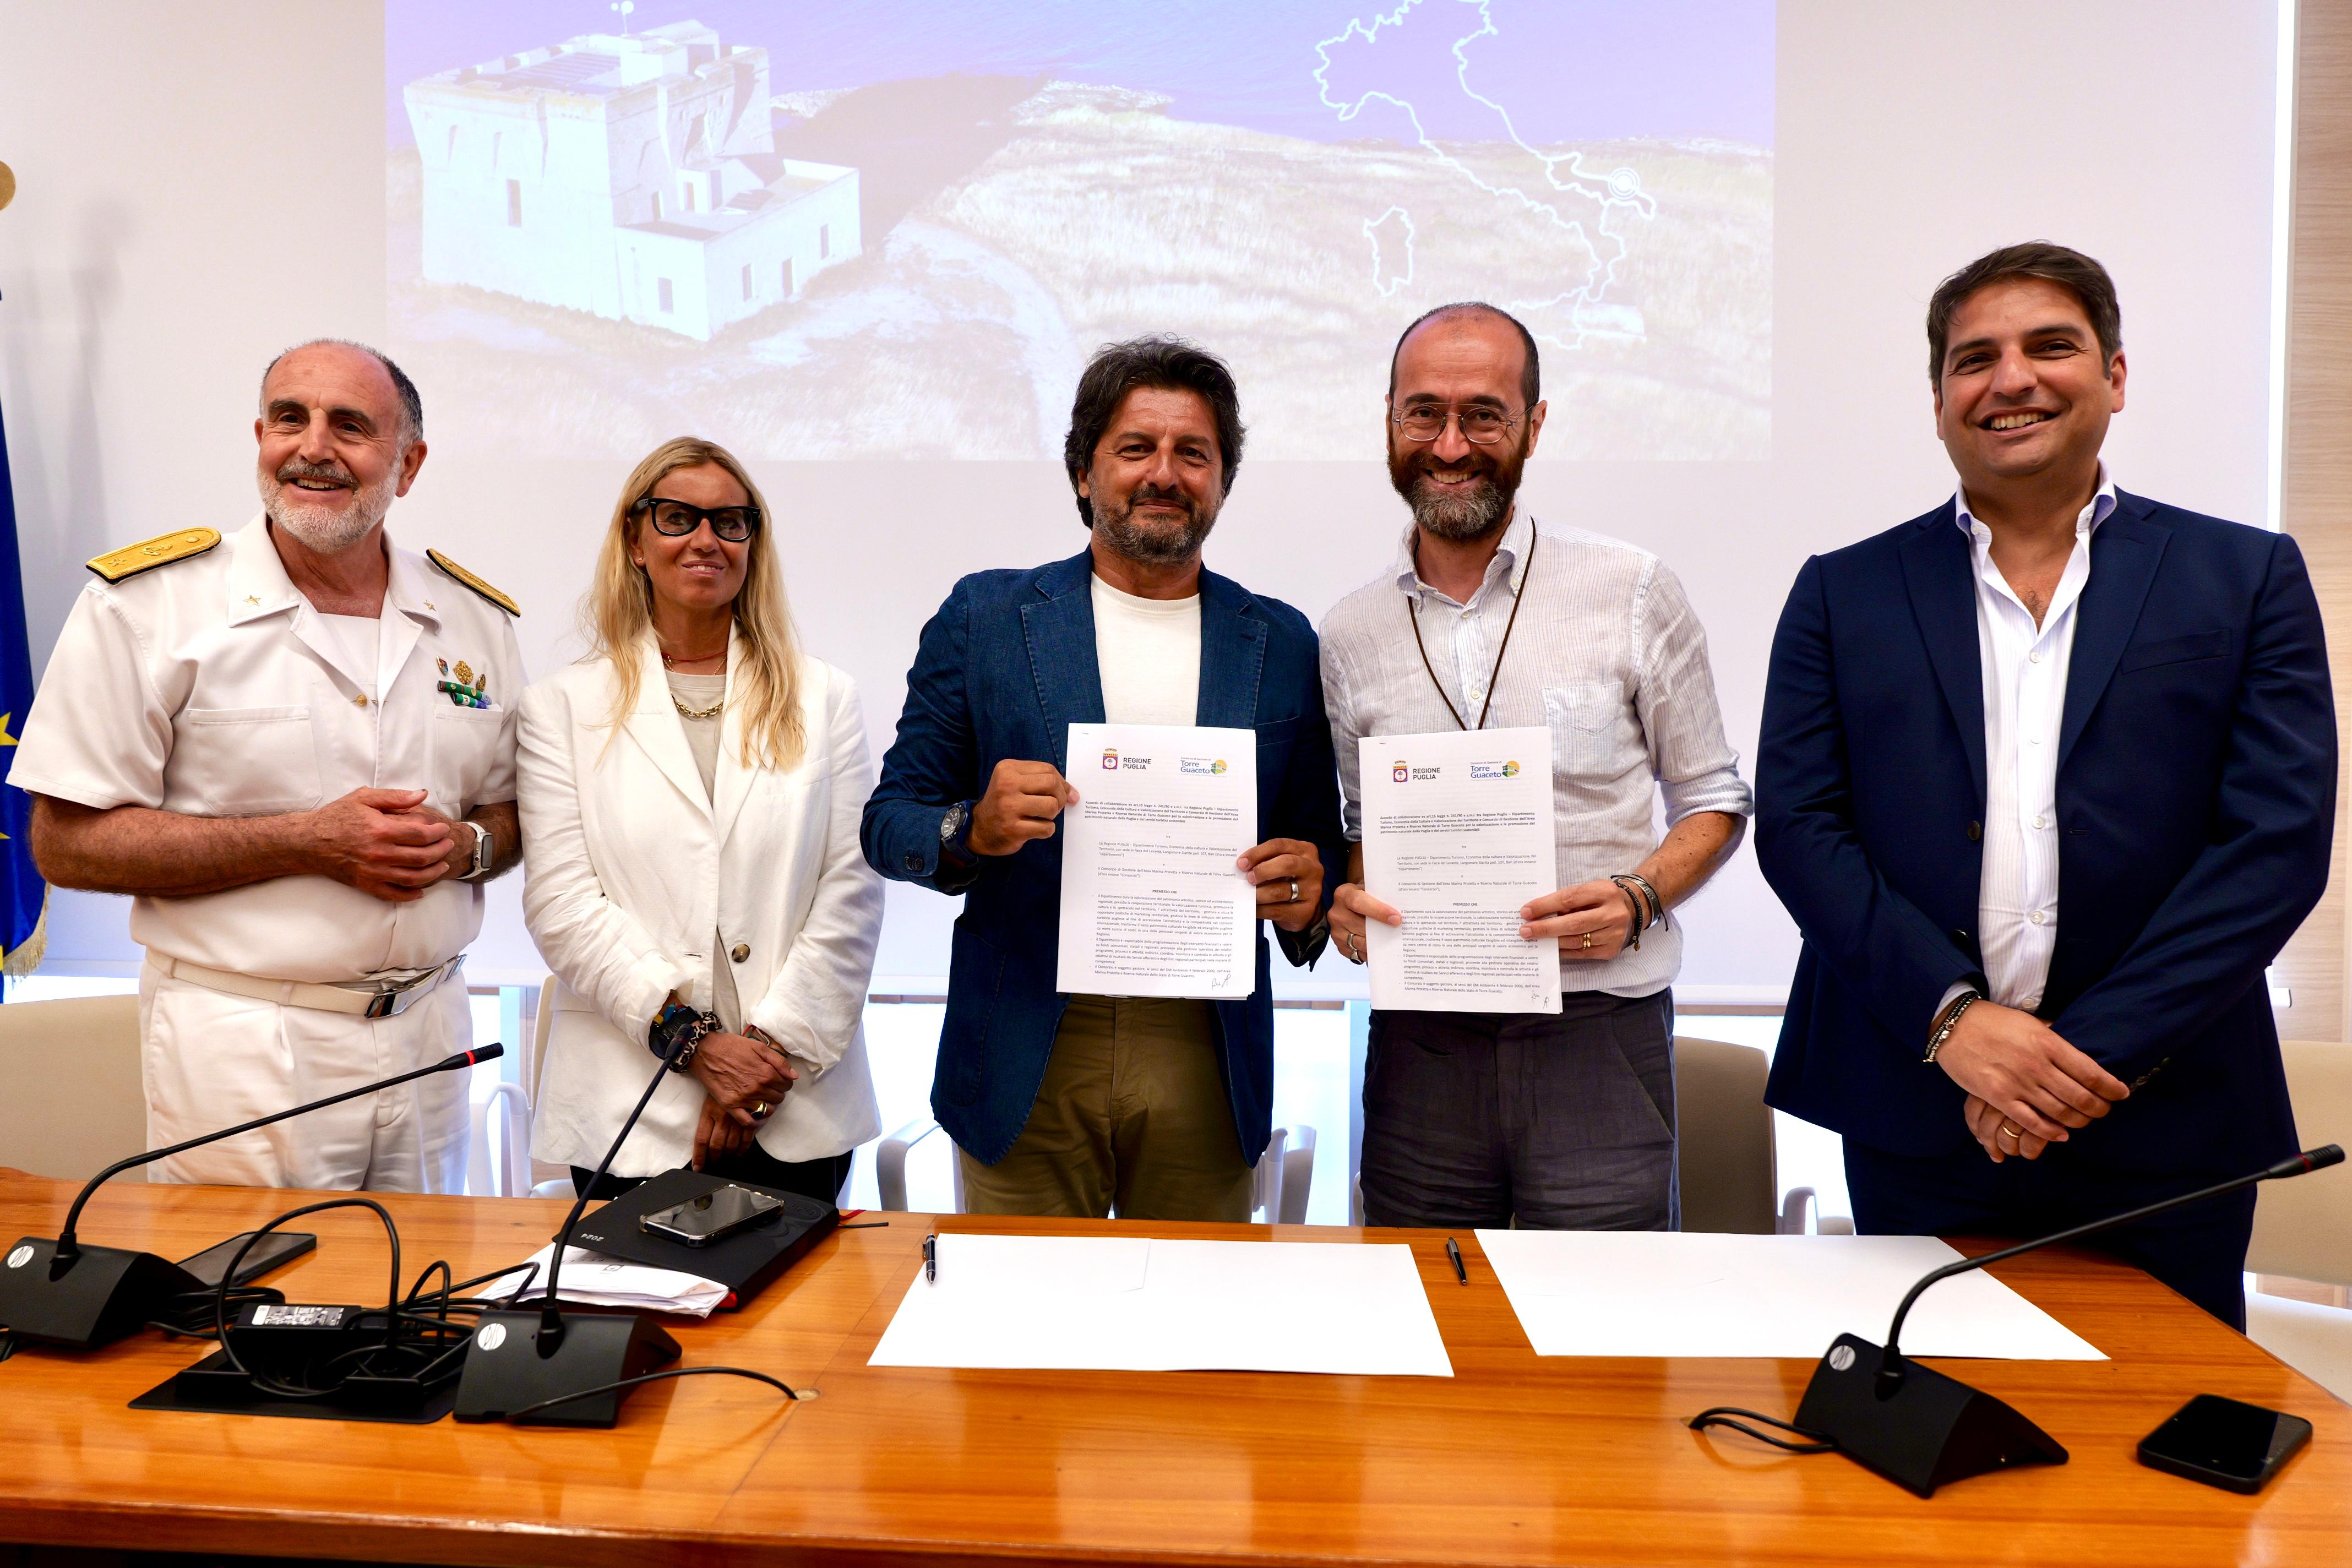 Galleria Regione Puglia e Consorzio di Torre Guaceto insieme per la promozione del turismo sostenibile - Diapositiva 9 di 9